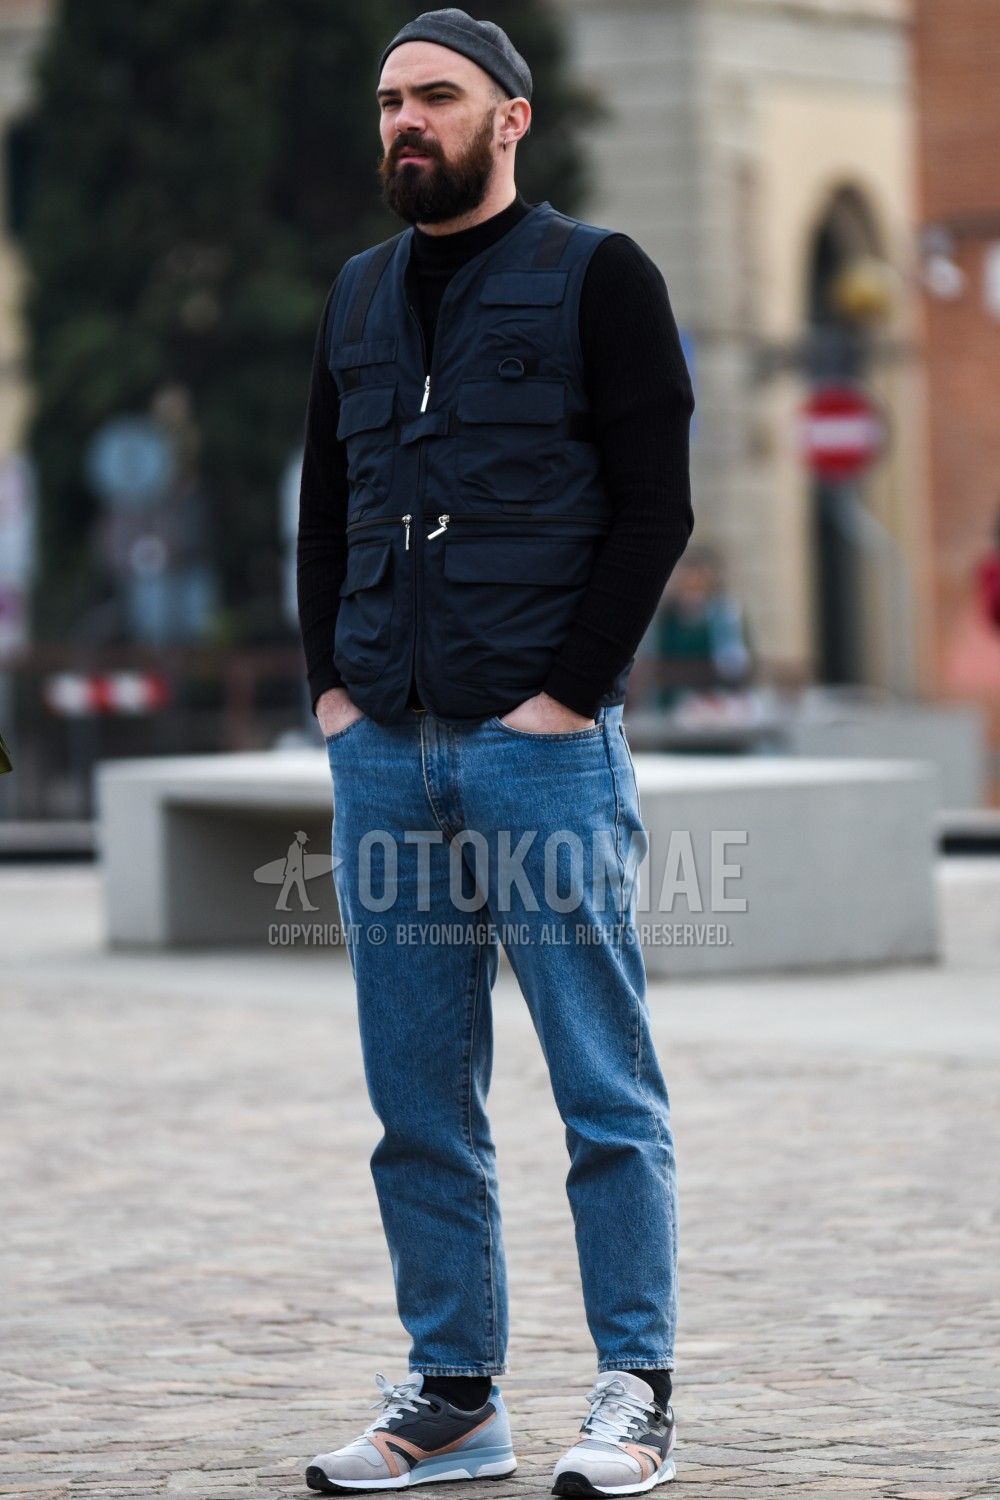 ベスト コーデ メンズ特集 アウター使いした秋冬の着こなしを紹介 メンズファッションメディア Otokomae 男前研究所